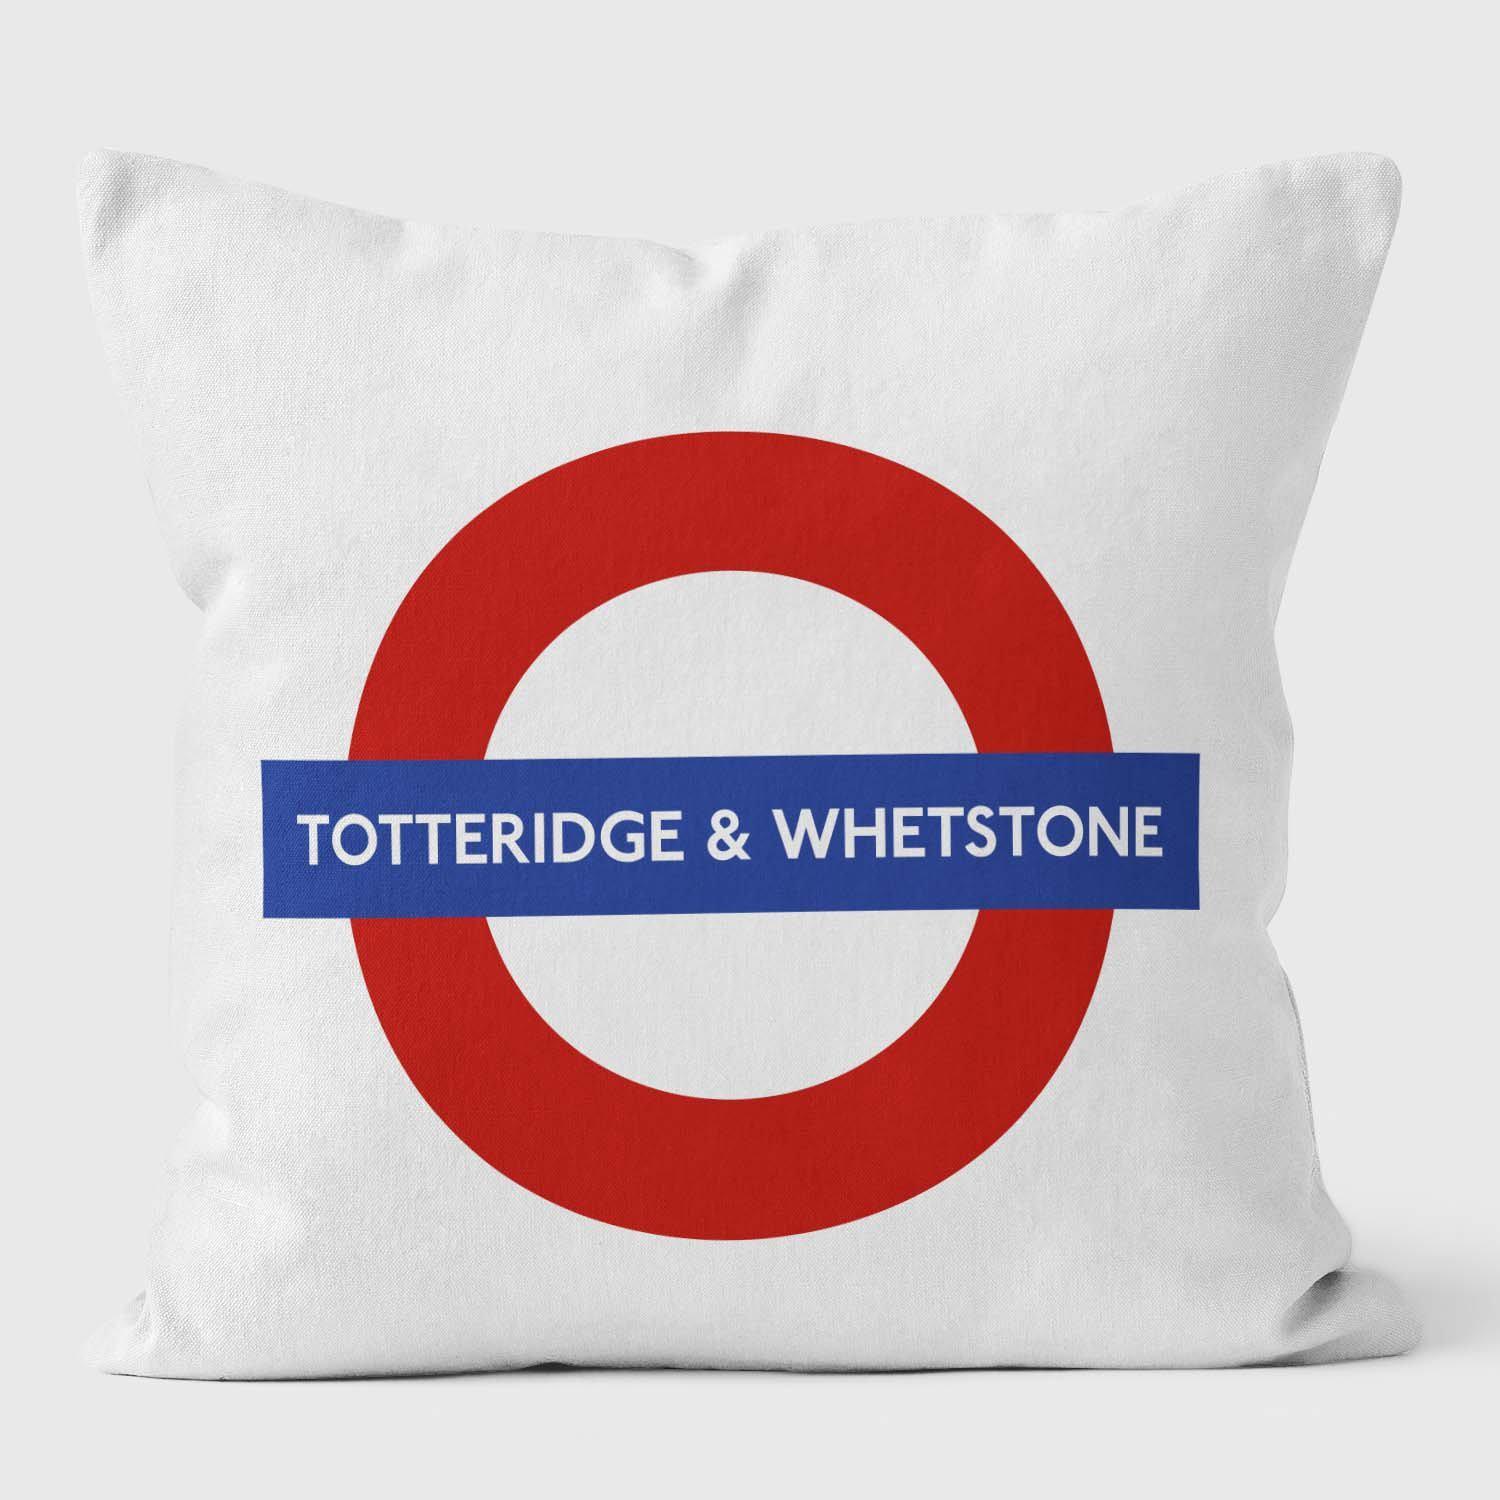 Totteridge Whetstone London Underground Tube Station Roundel Cushion - Handmade Cushions UK - WeLoveCushions